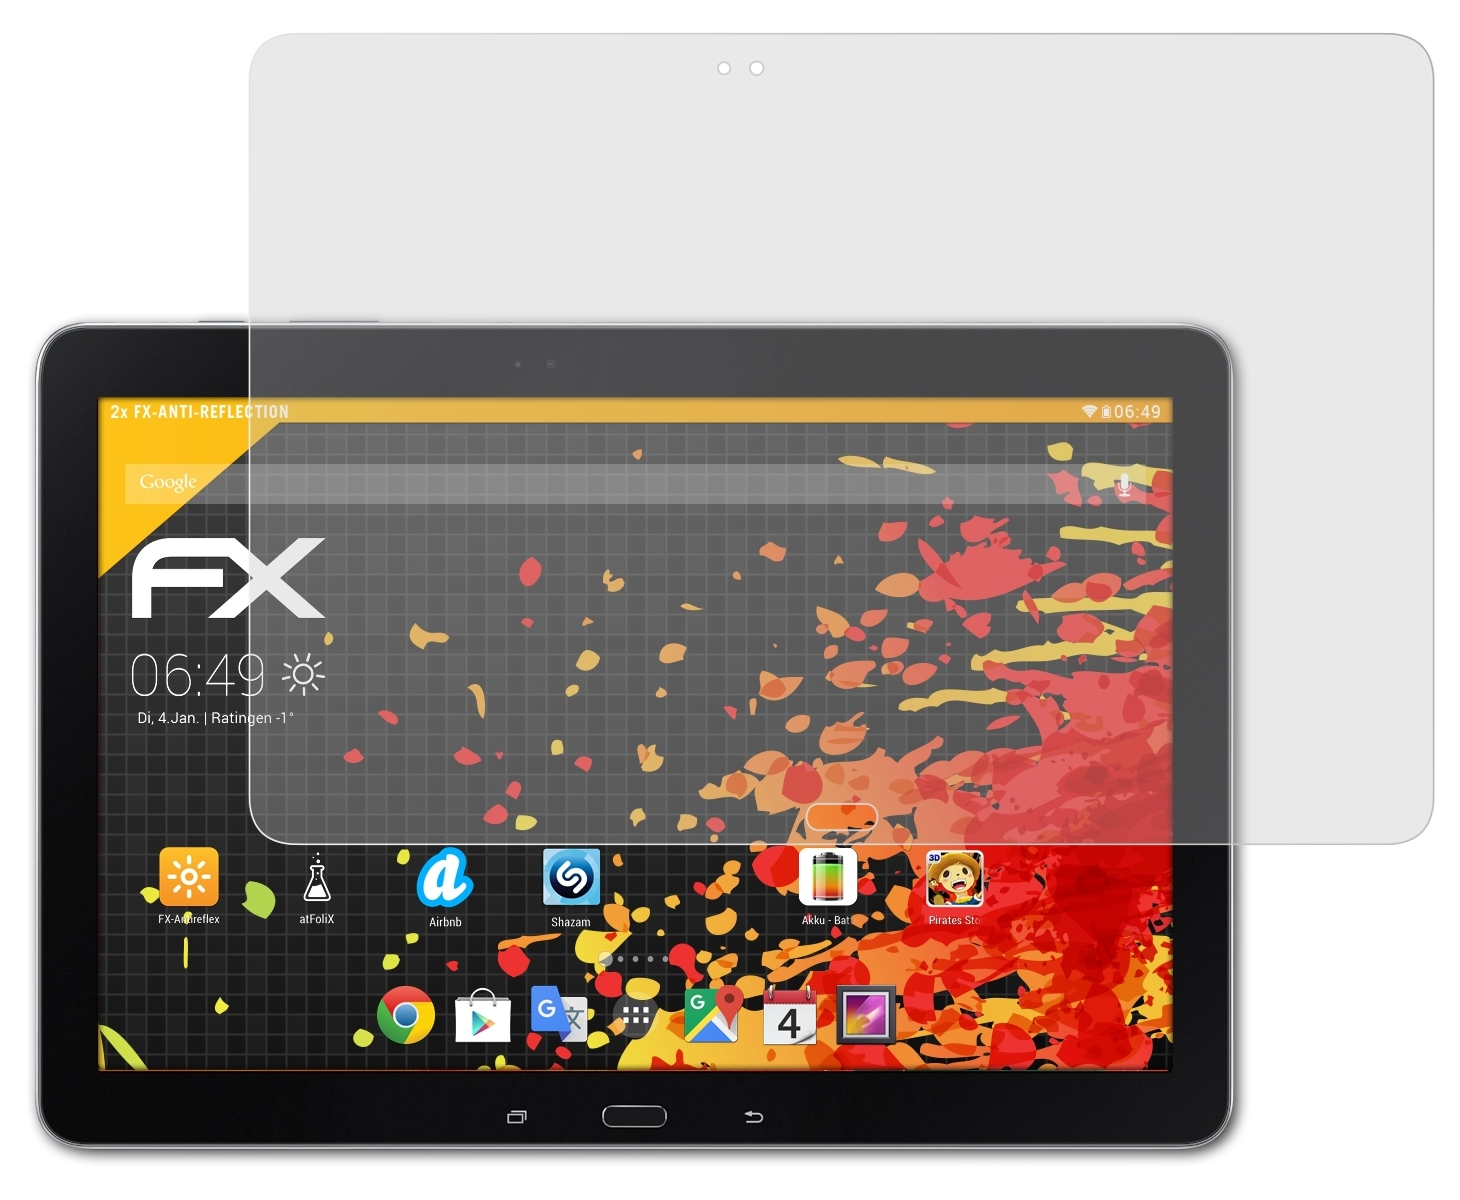 12.2 FX-Antireflex Samsung TabPro (SM-T900)) Displayschutz(für ATFOLIX 2x Wi-Fi Galaxy